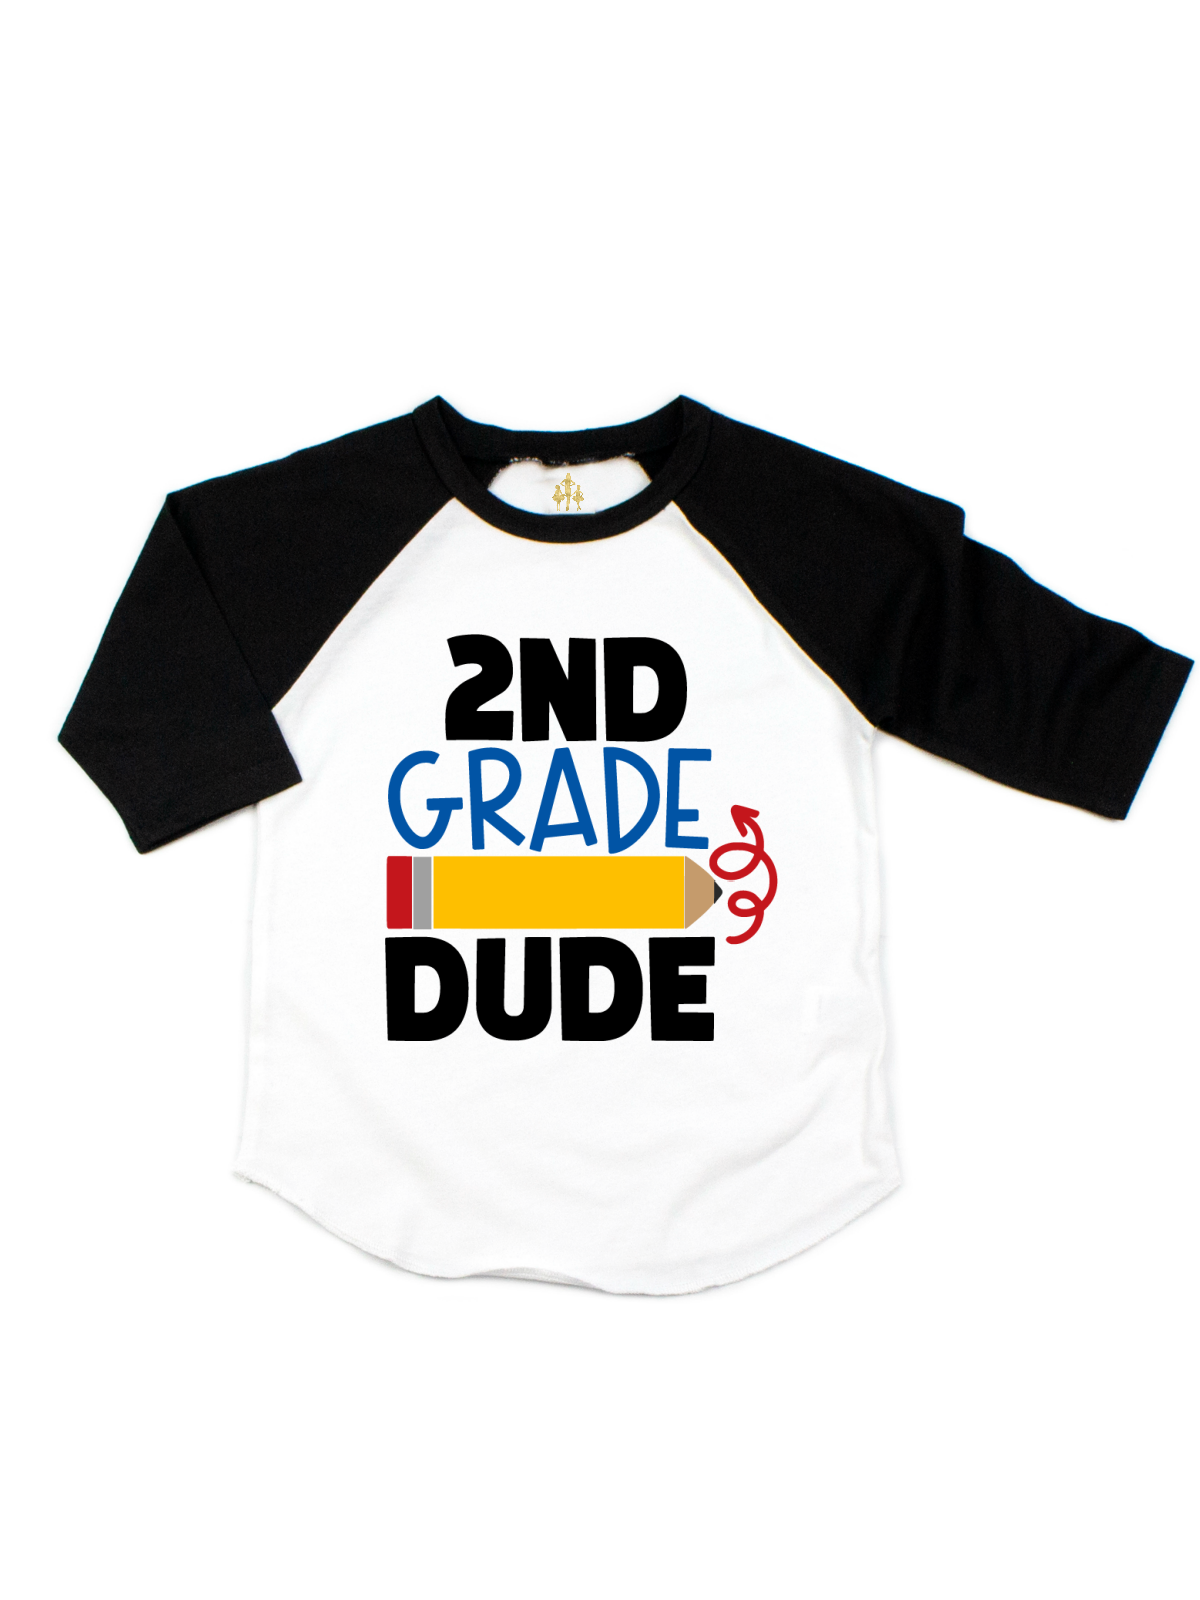 2nd grade dude kids shirt